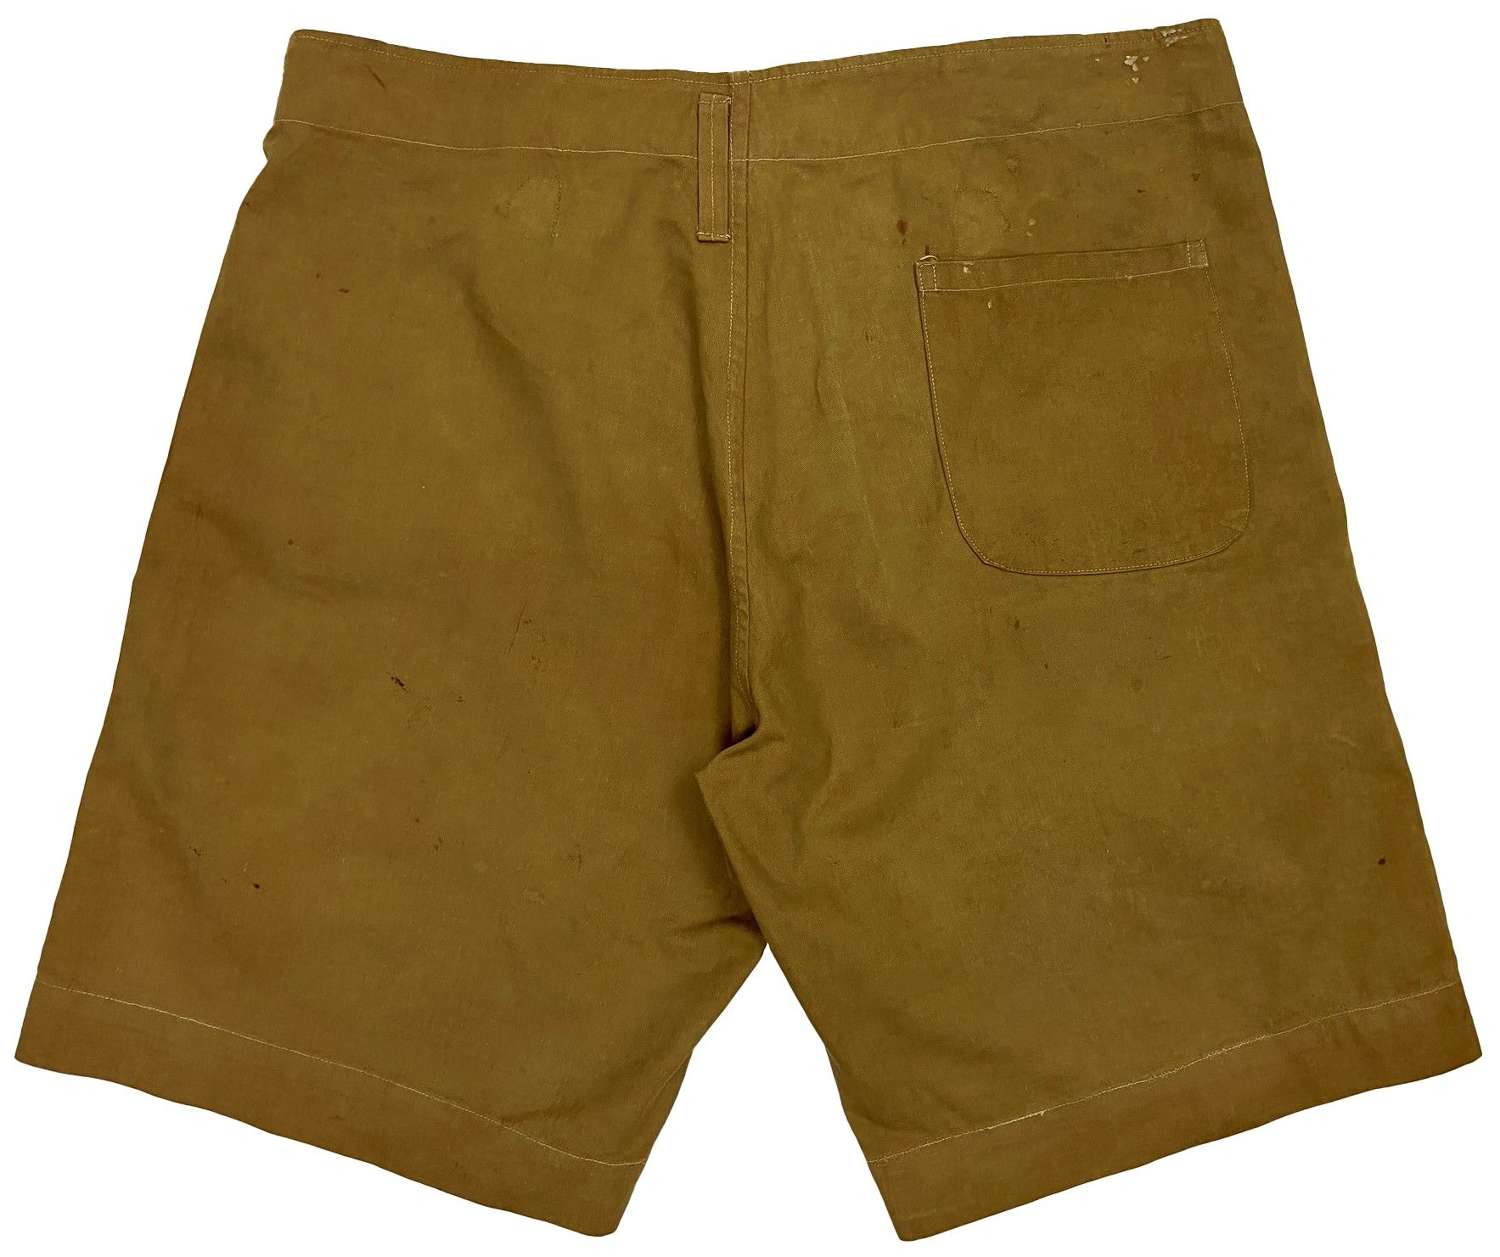 Kleding Herenkleding Shorts Originele Vroege 20e eeuwse Kaki Drill Shorts Great War Officer? 